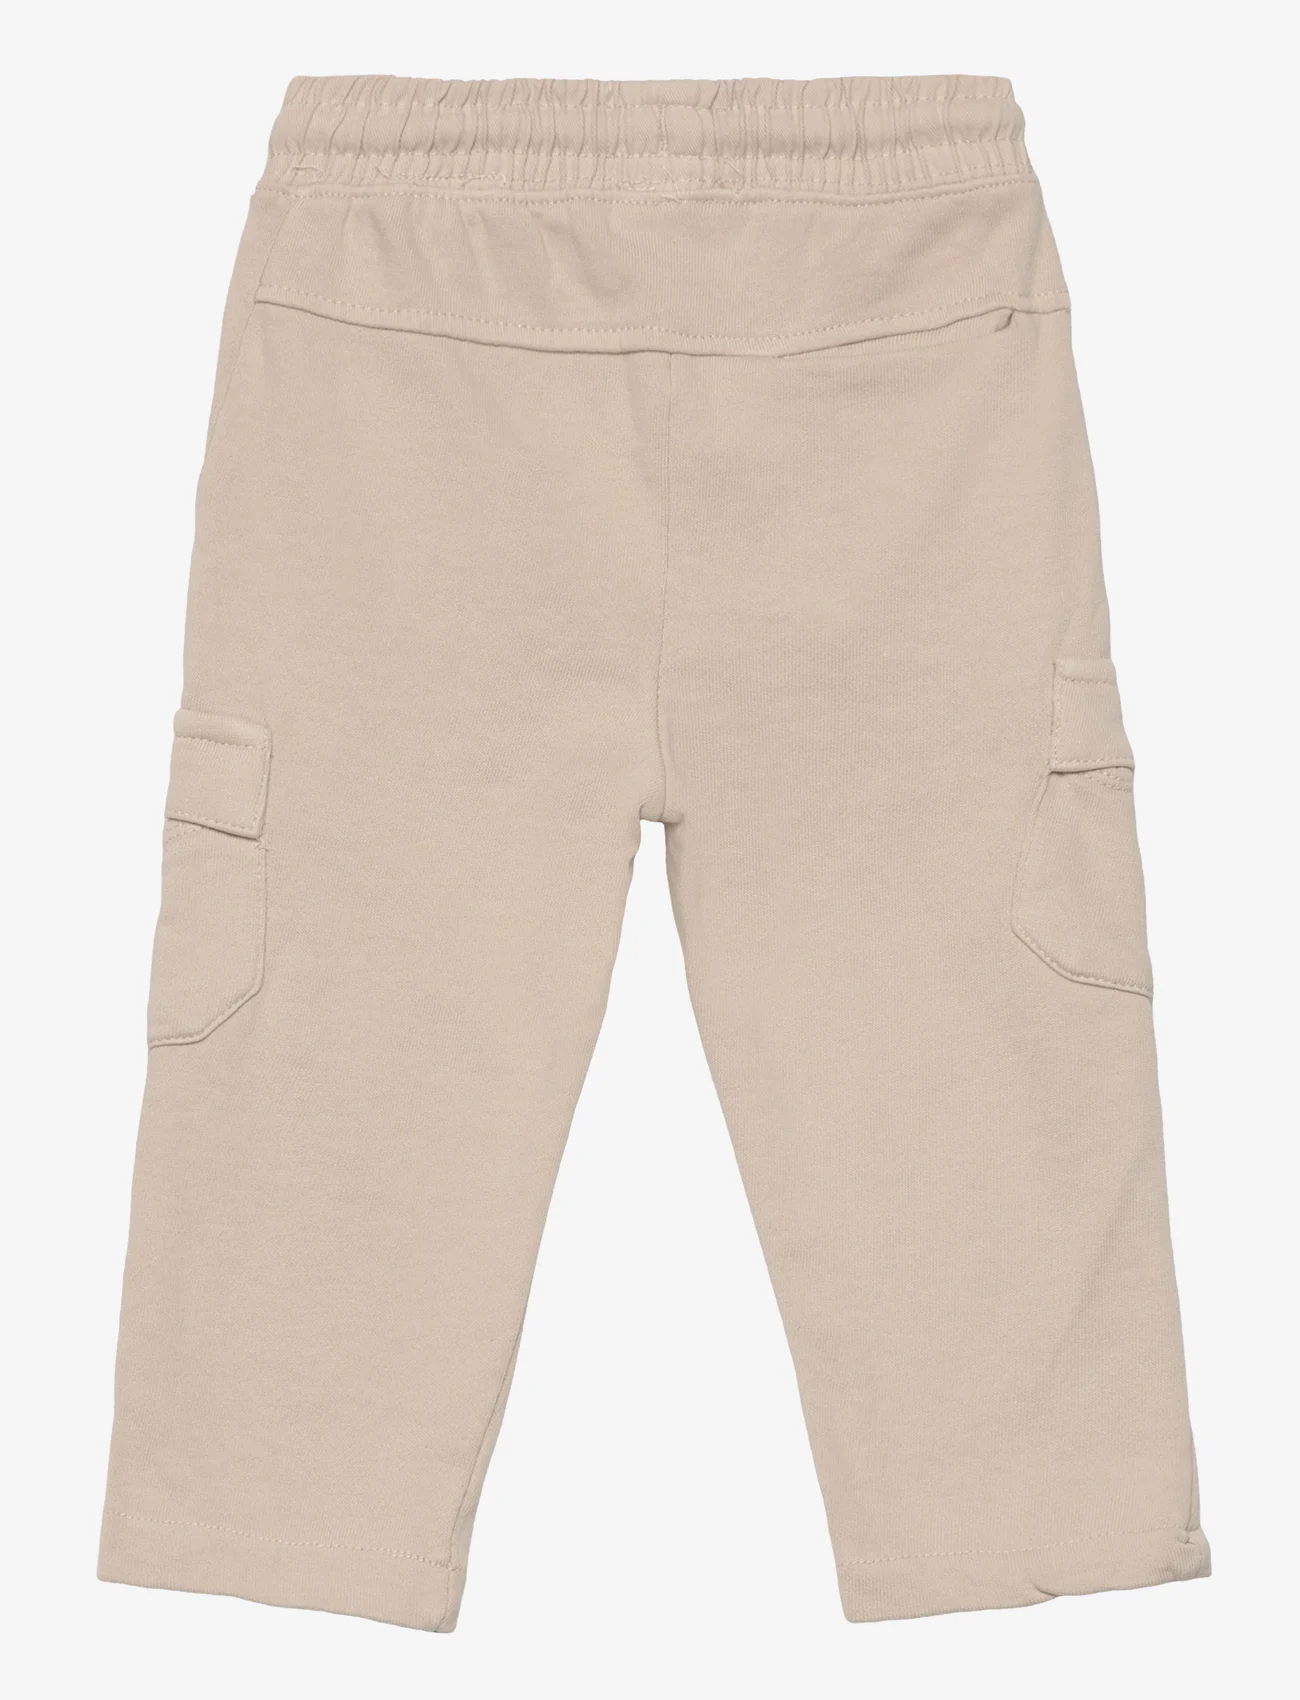 Mango - Cotton jogger-style trousers - laveste priser - lt pastel brown - 1